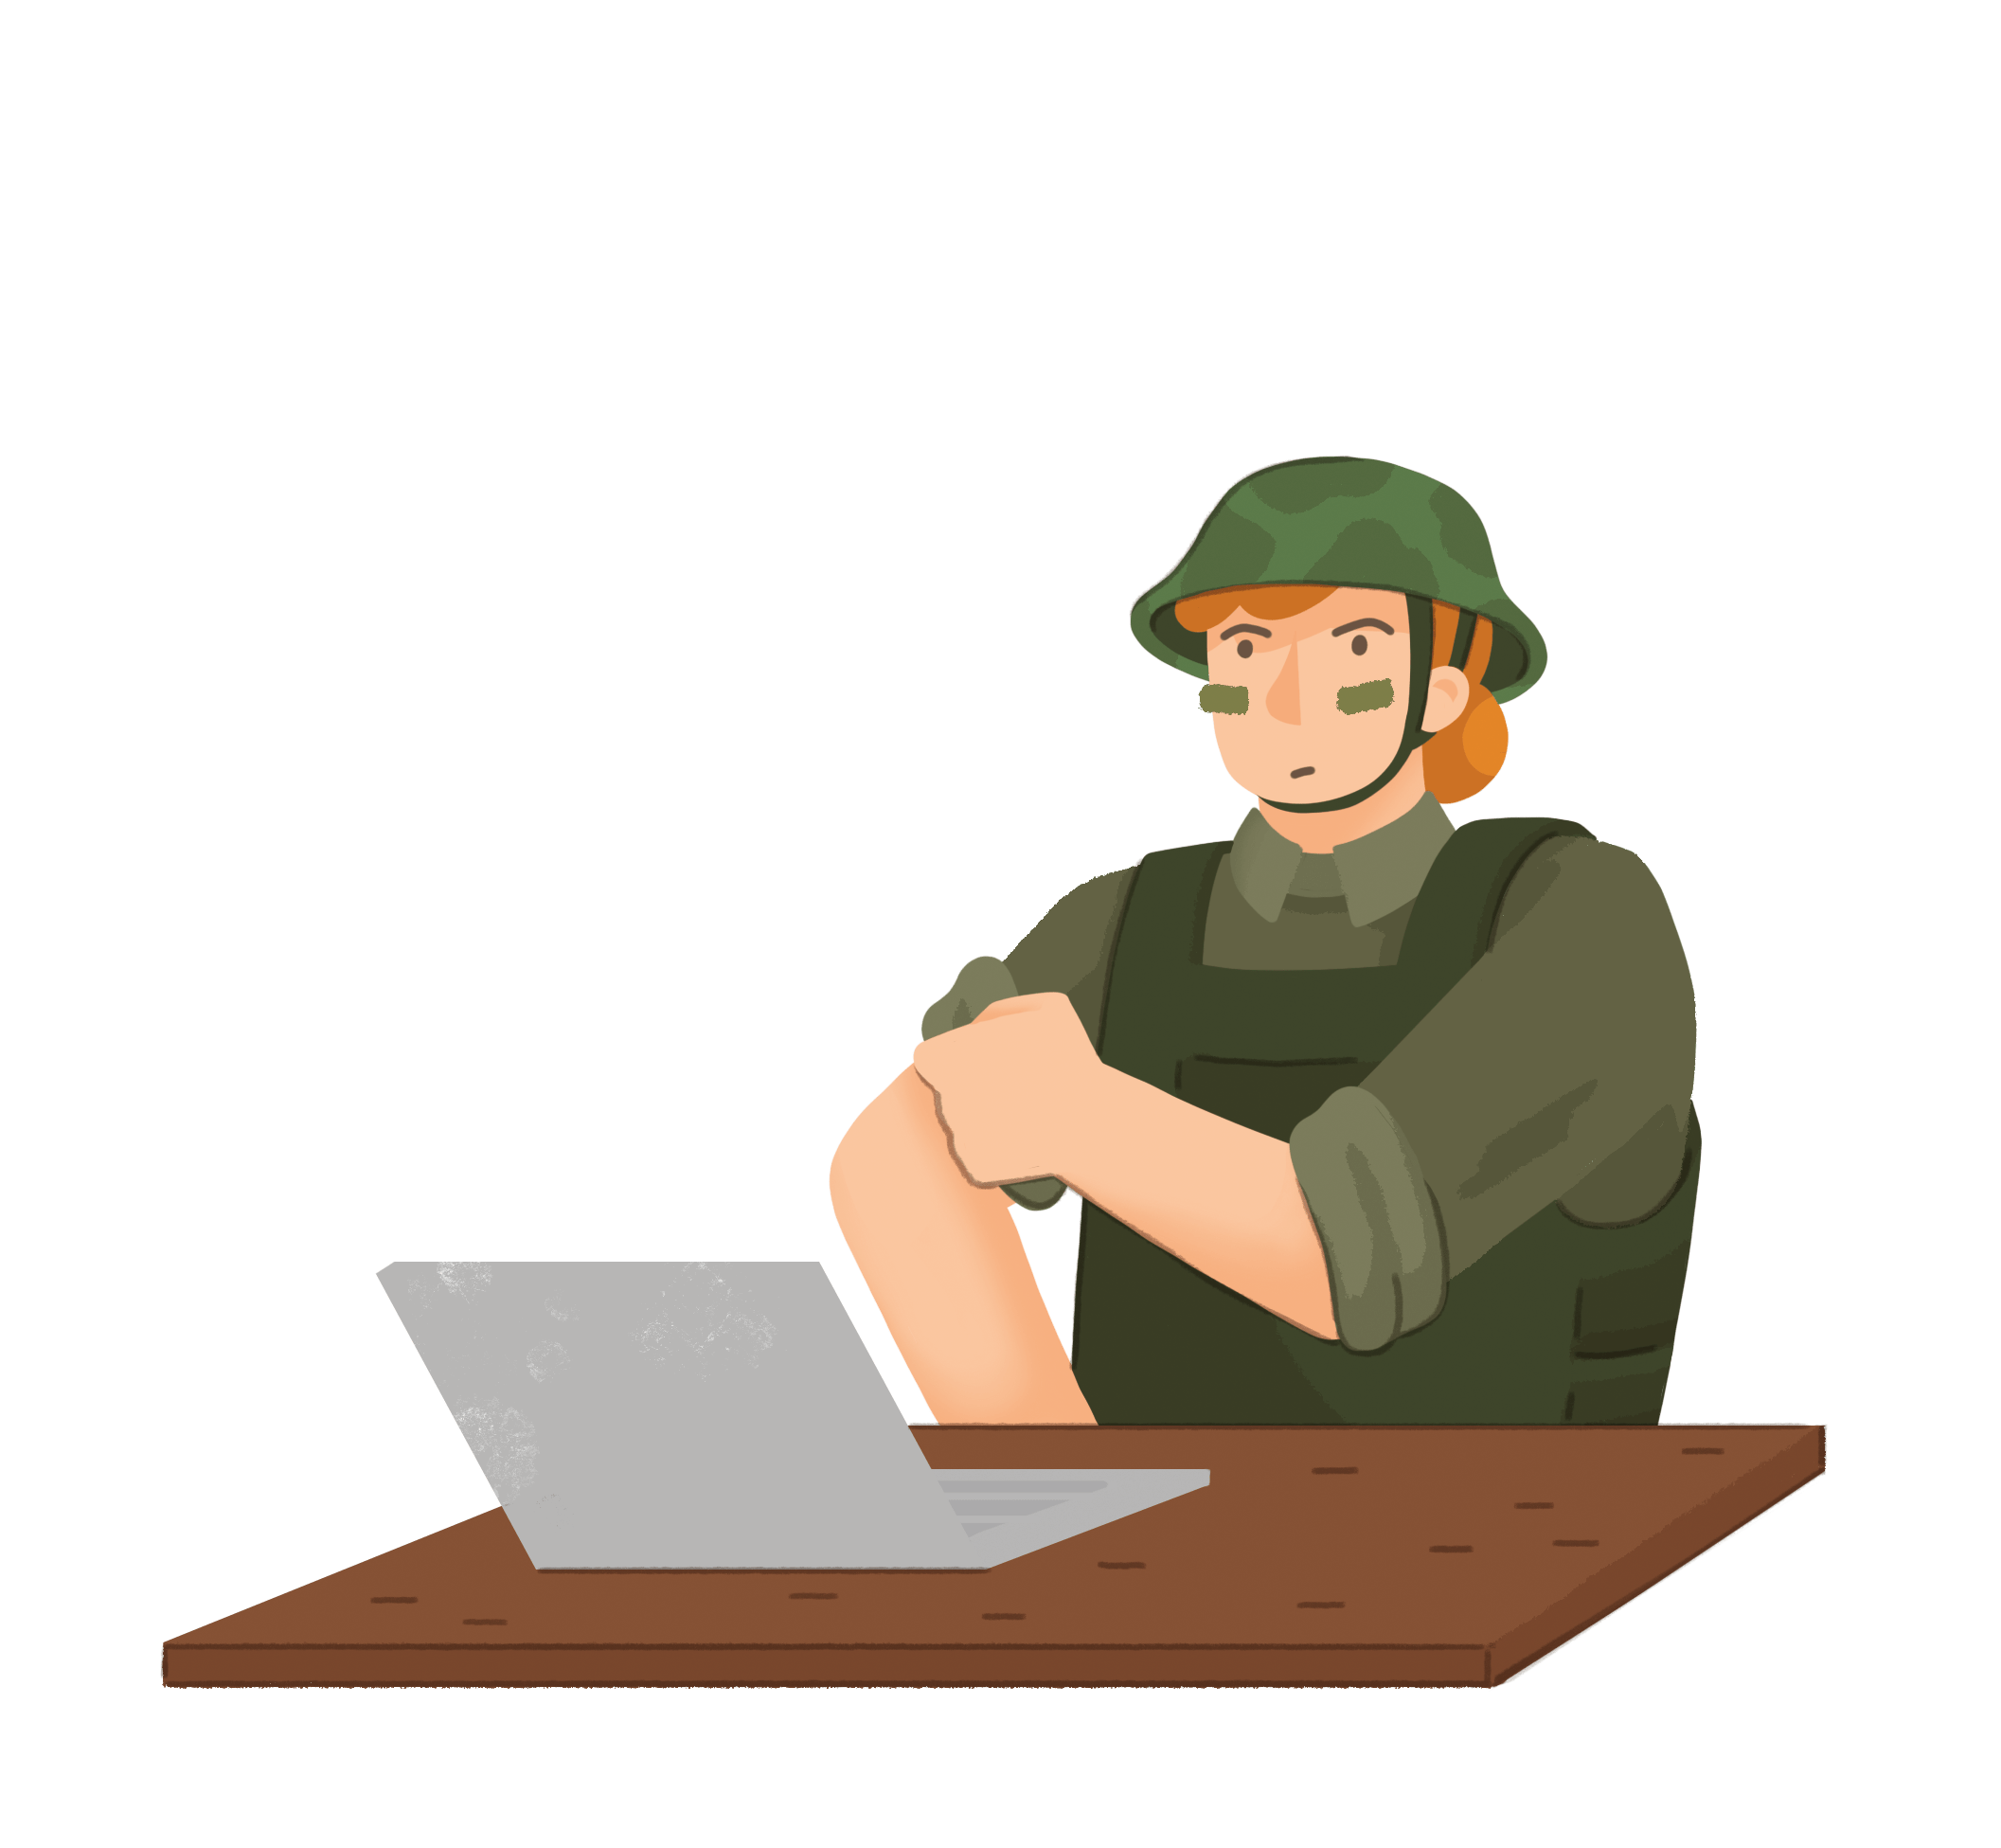 Eine Person, die in militärischer Kleidung or dem Laptop sitzt und die Ärmel hochkrempelt